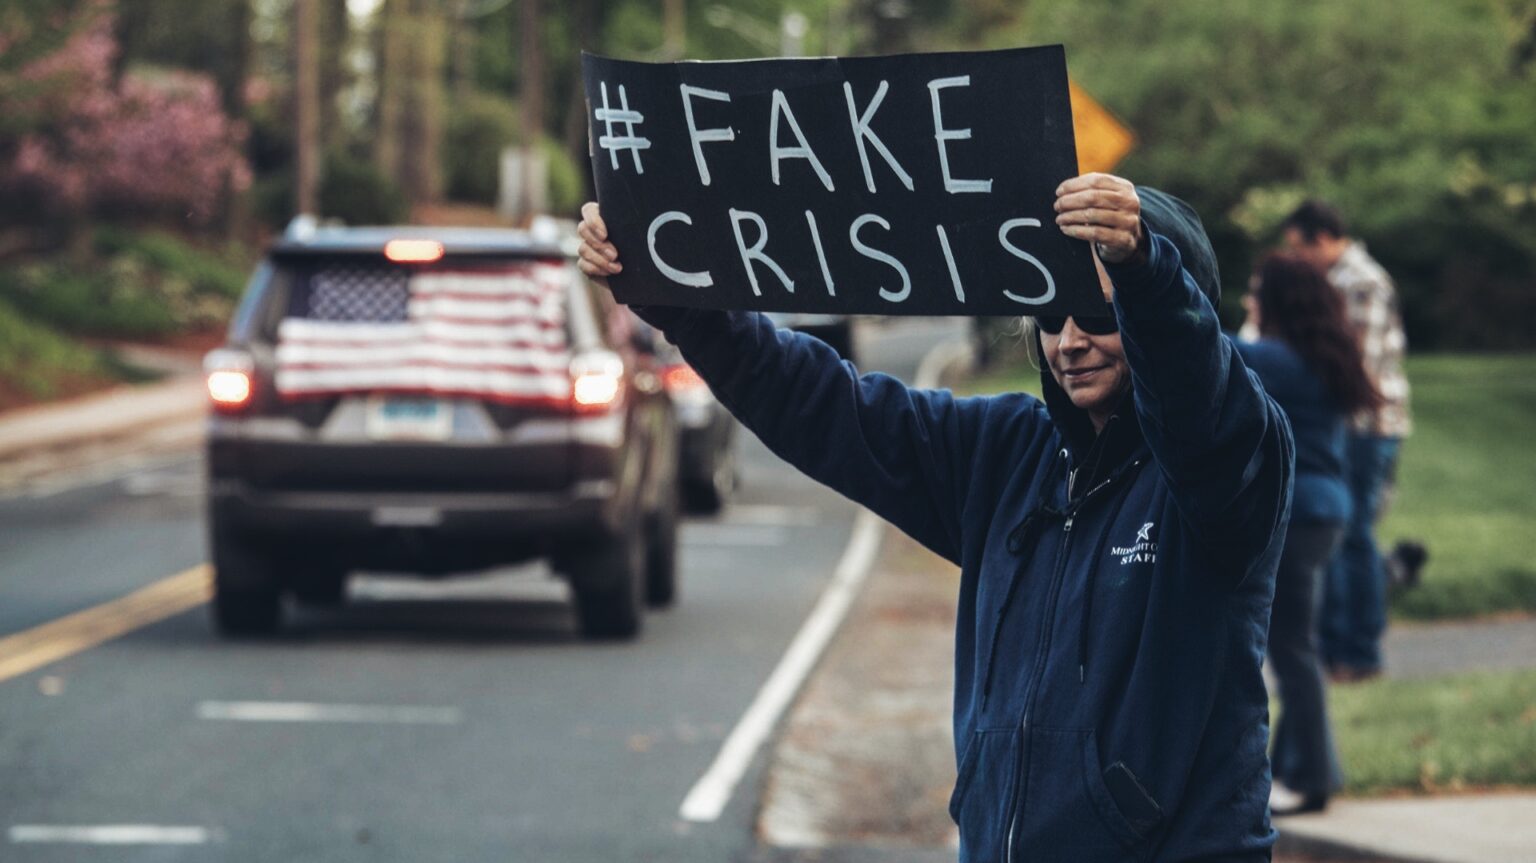 Fake crisis